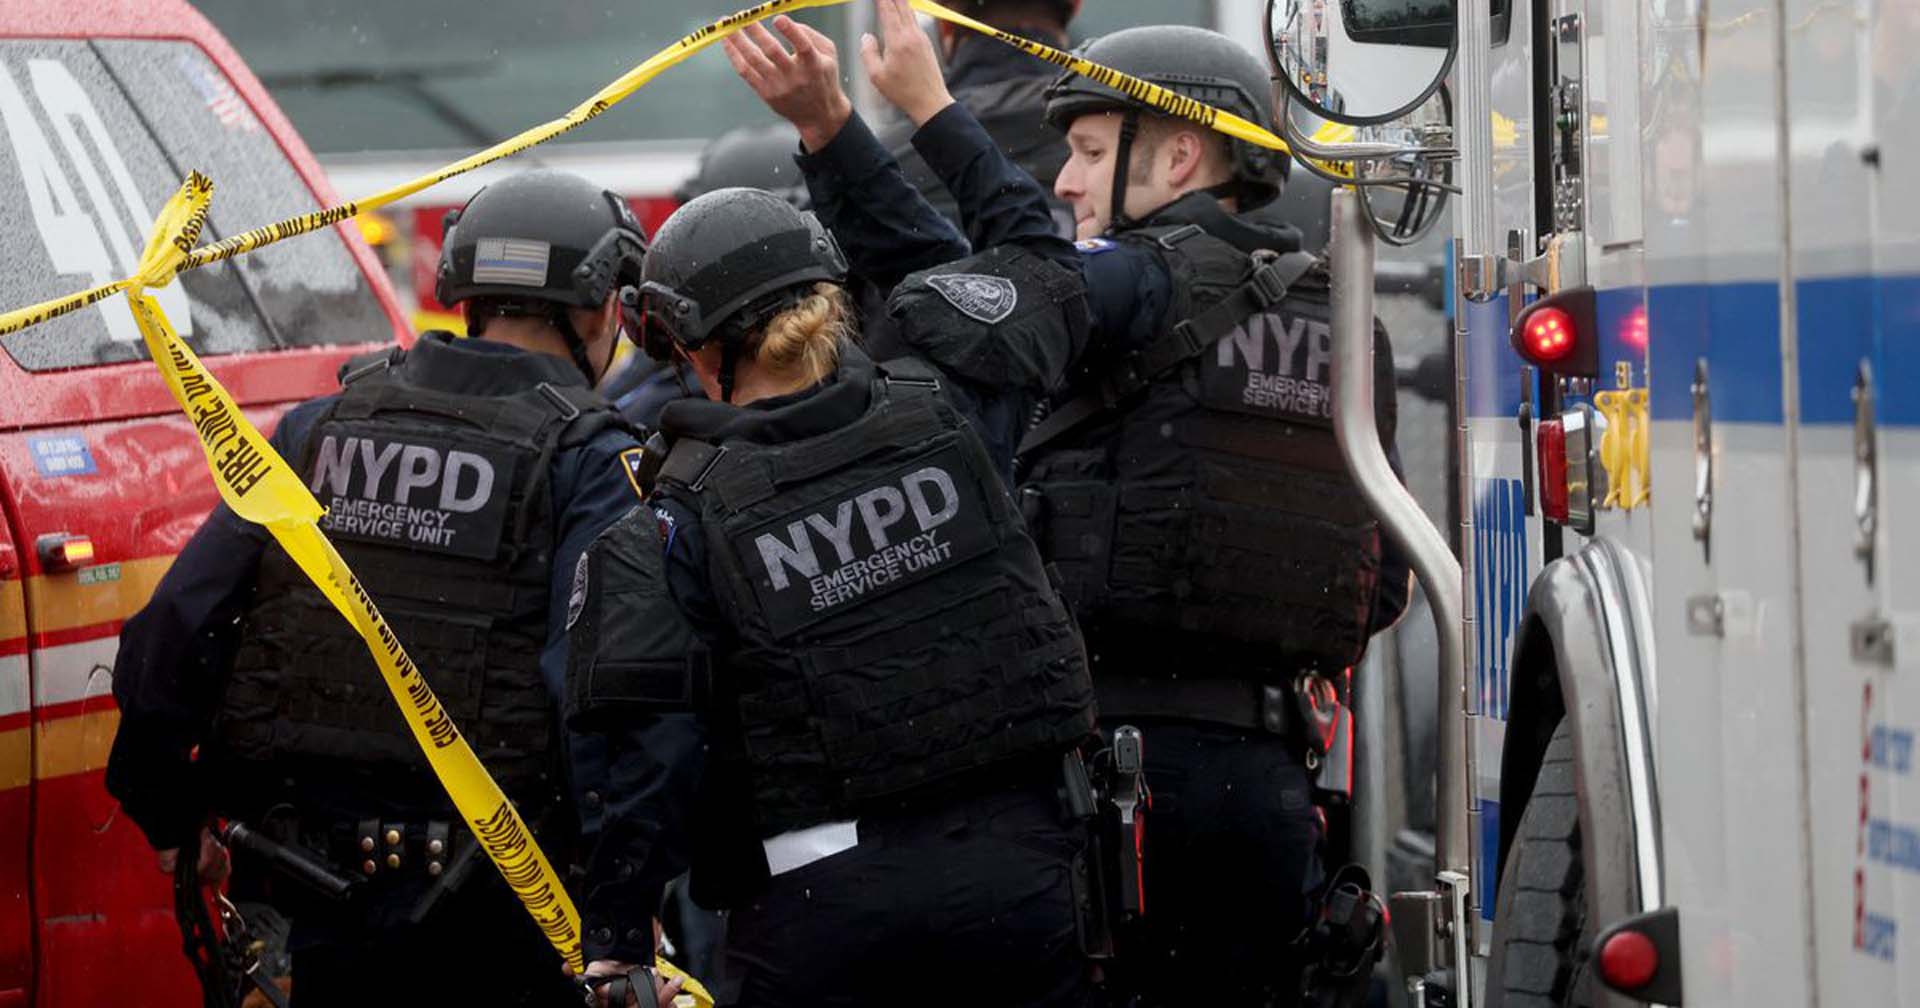 ยอดบาดเจ็บเหตุกราดยิงนิวยอร์กพุ่ง 16 ราย-ตำรวจไม่ตัดประเด็นก่อการร้าย